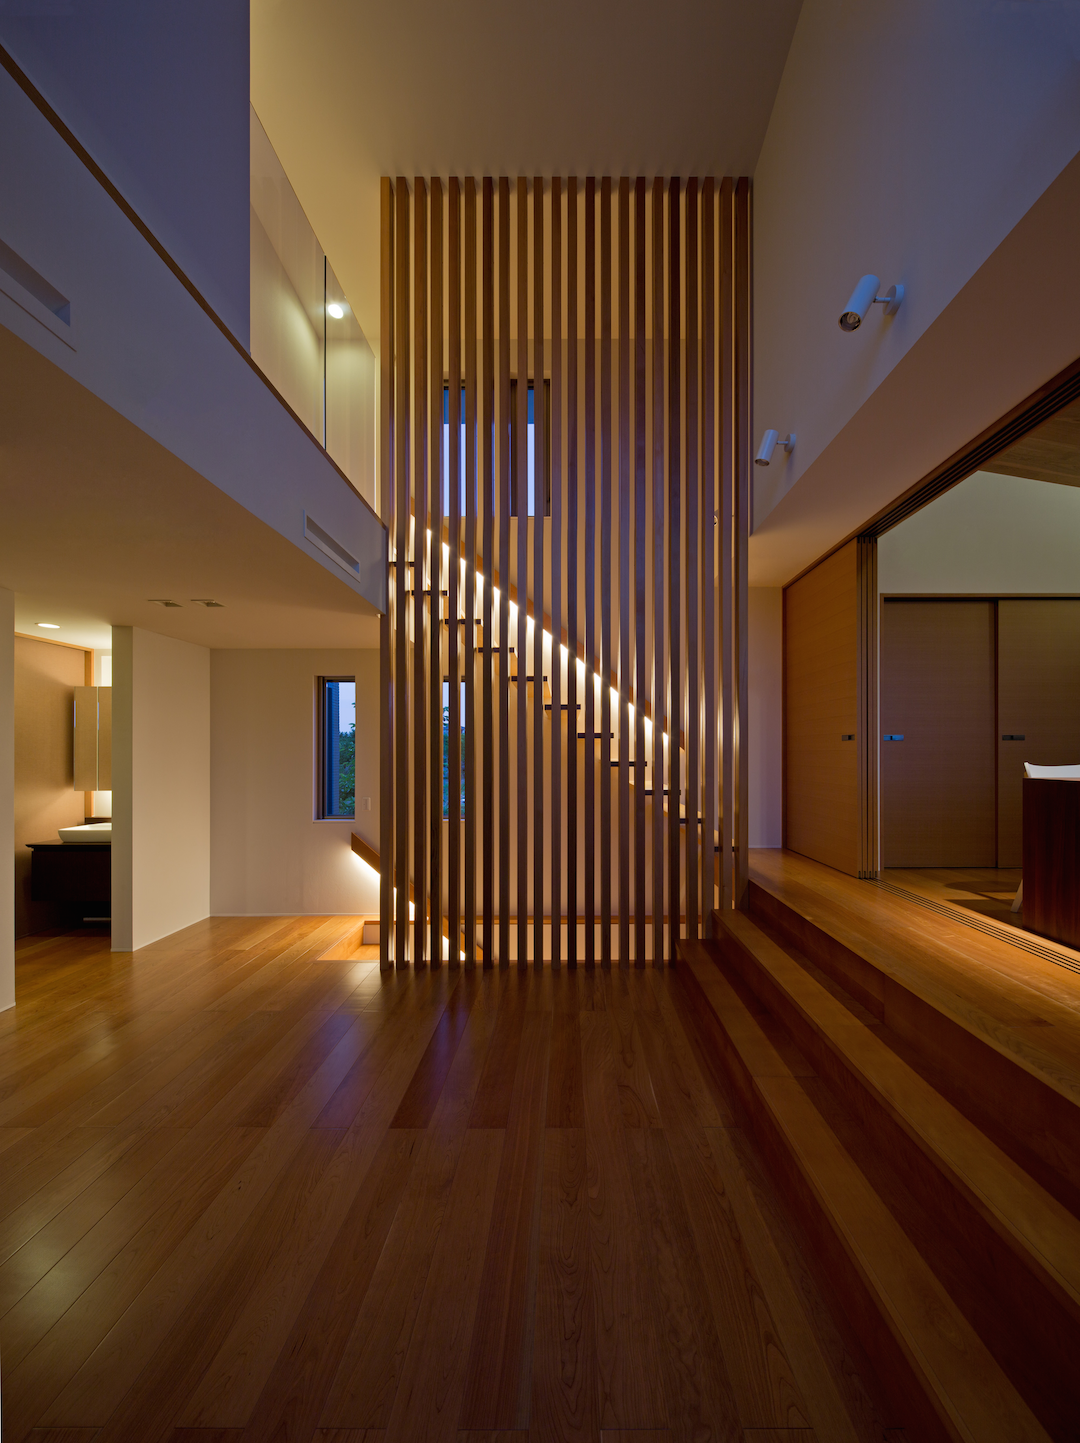 Wedo thiết kế nội thất nhà đẹp, mát mẻ và sang trọng với gỗ tự nhiên